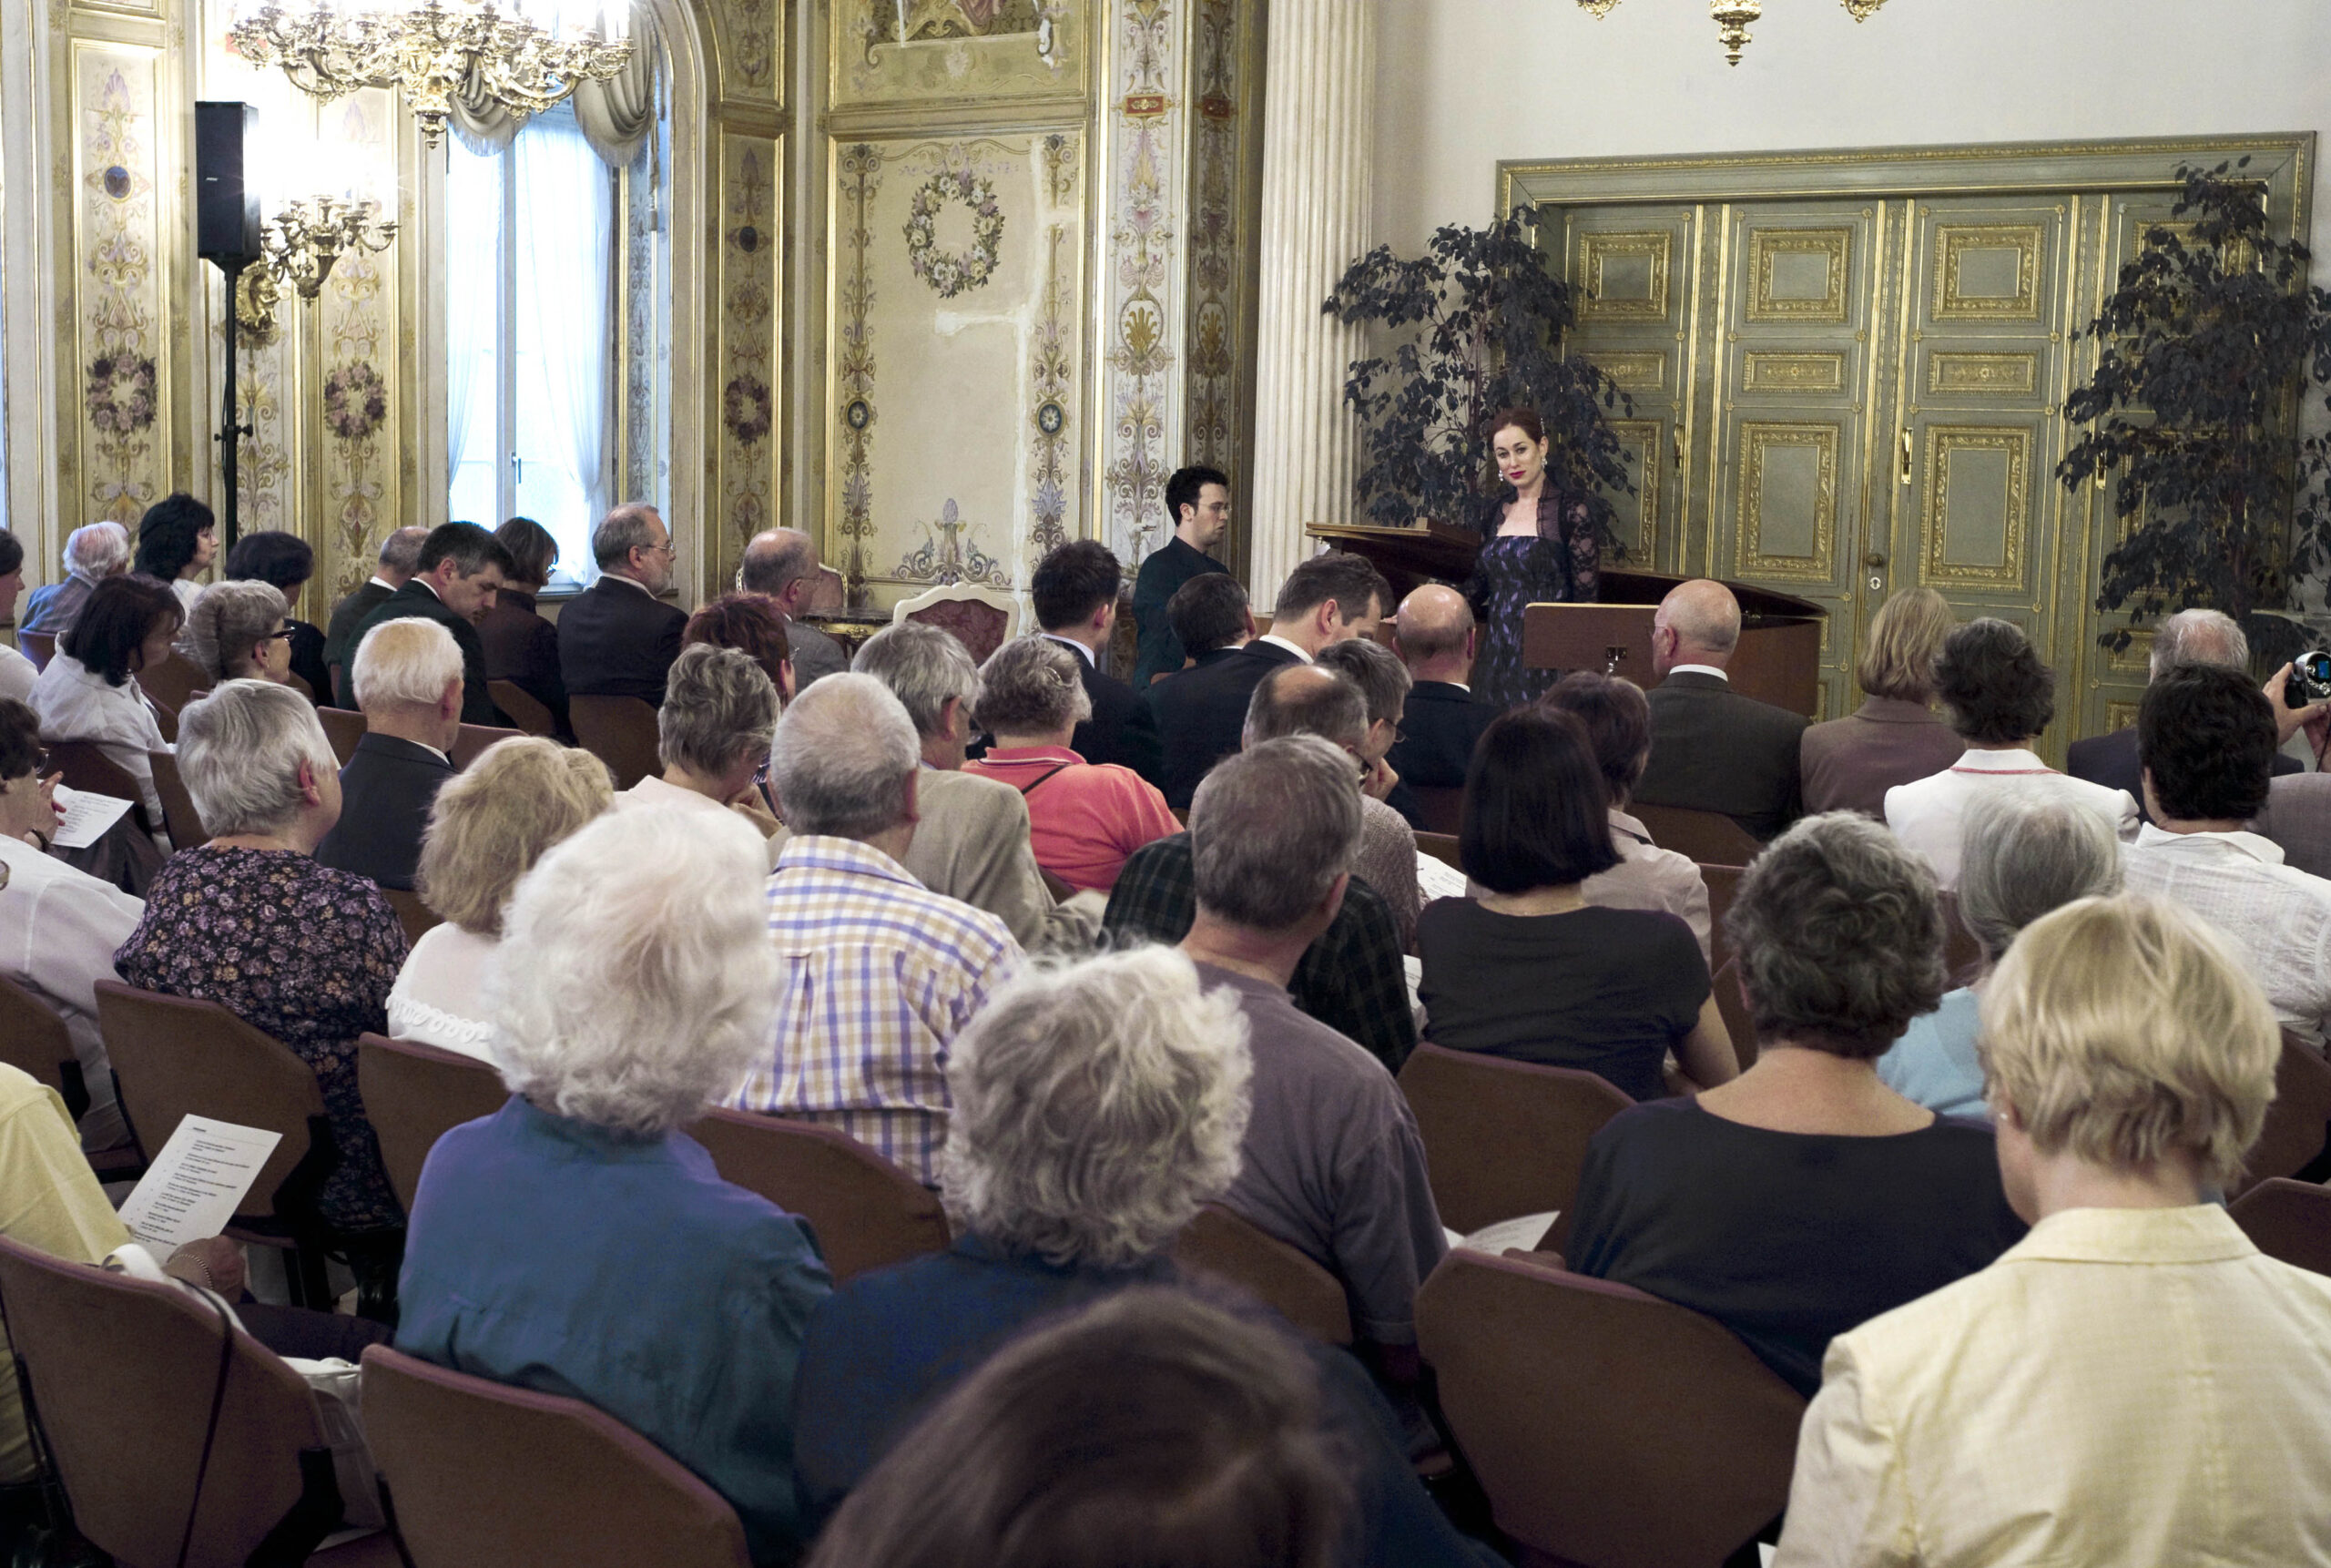 Concert de la communauté juive de Wiesbaden dans la salle de musique du parlement de Hesse. Photographe : Igor Eisenschtat. Collection de la communauté juive de Wiesbaden